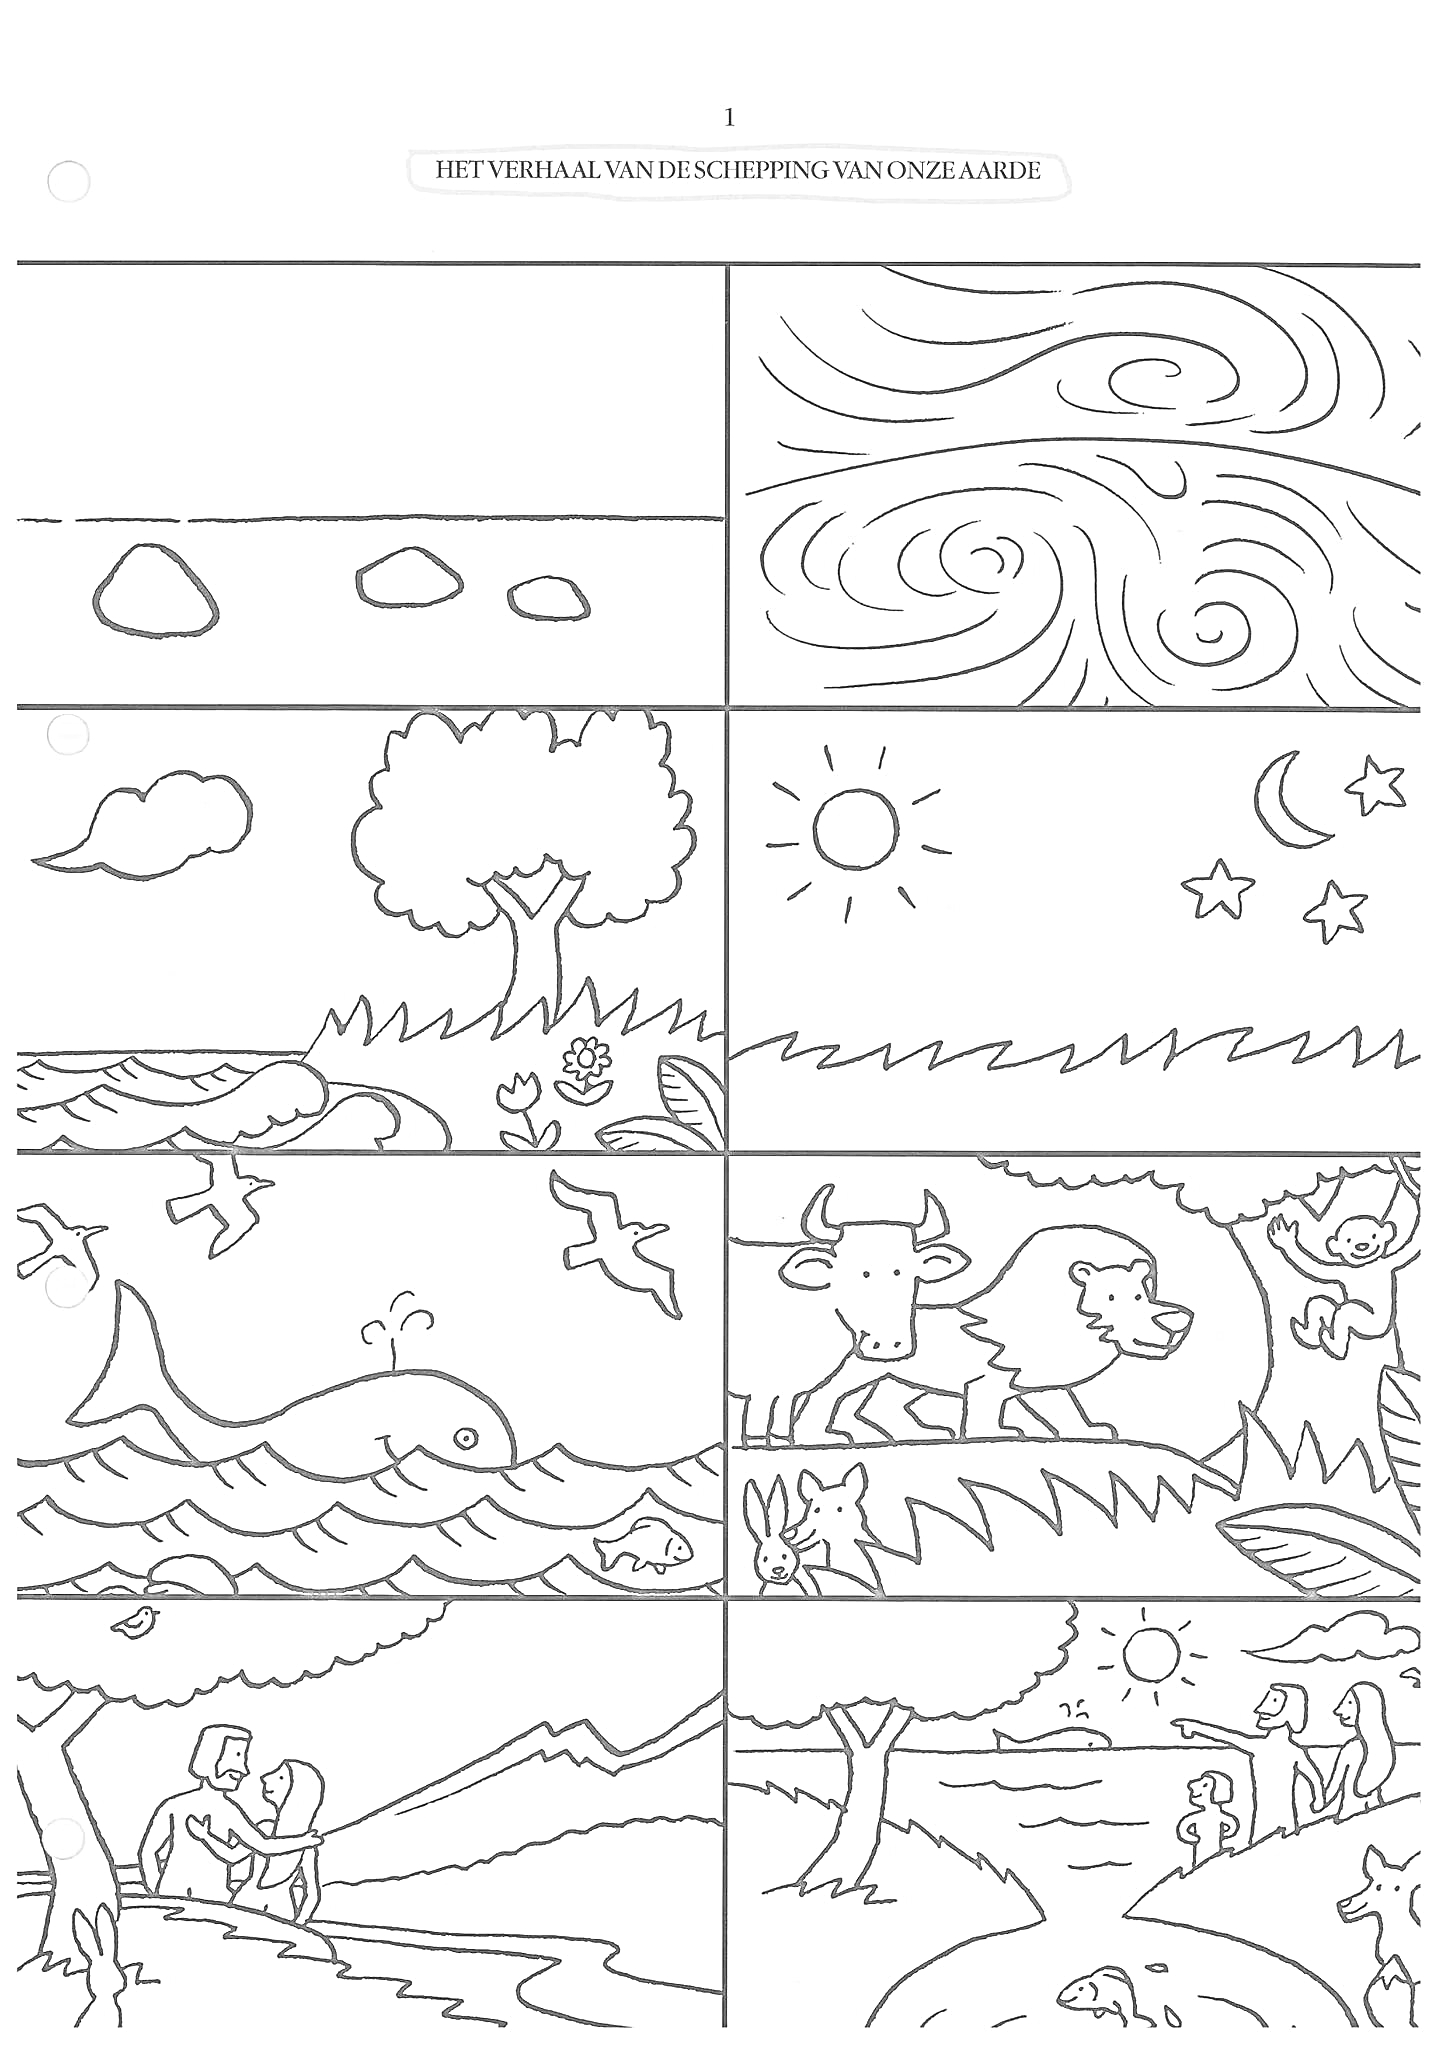 Раскраска Сотворение мира: небо с облаками и солнцем, звезды и луна, горы, деревья, рыбы, животные, люди